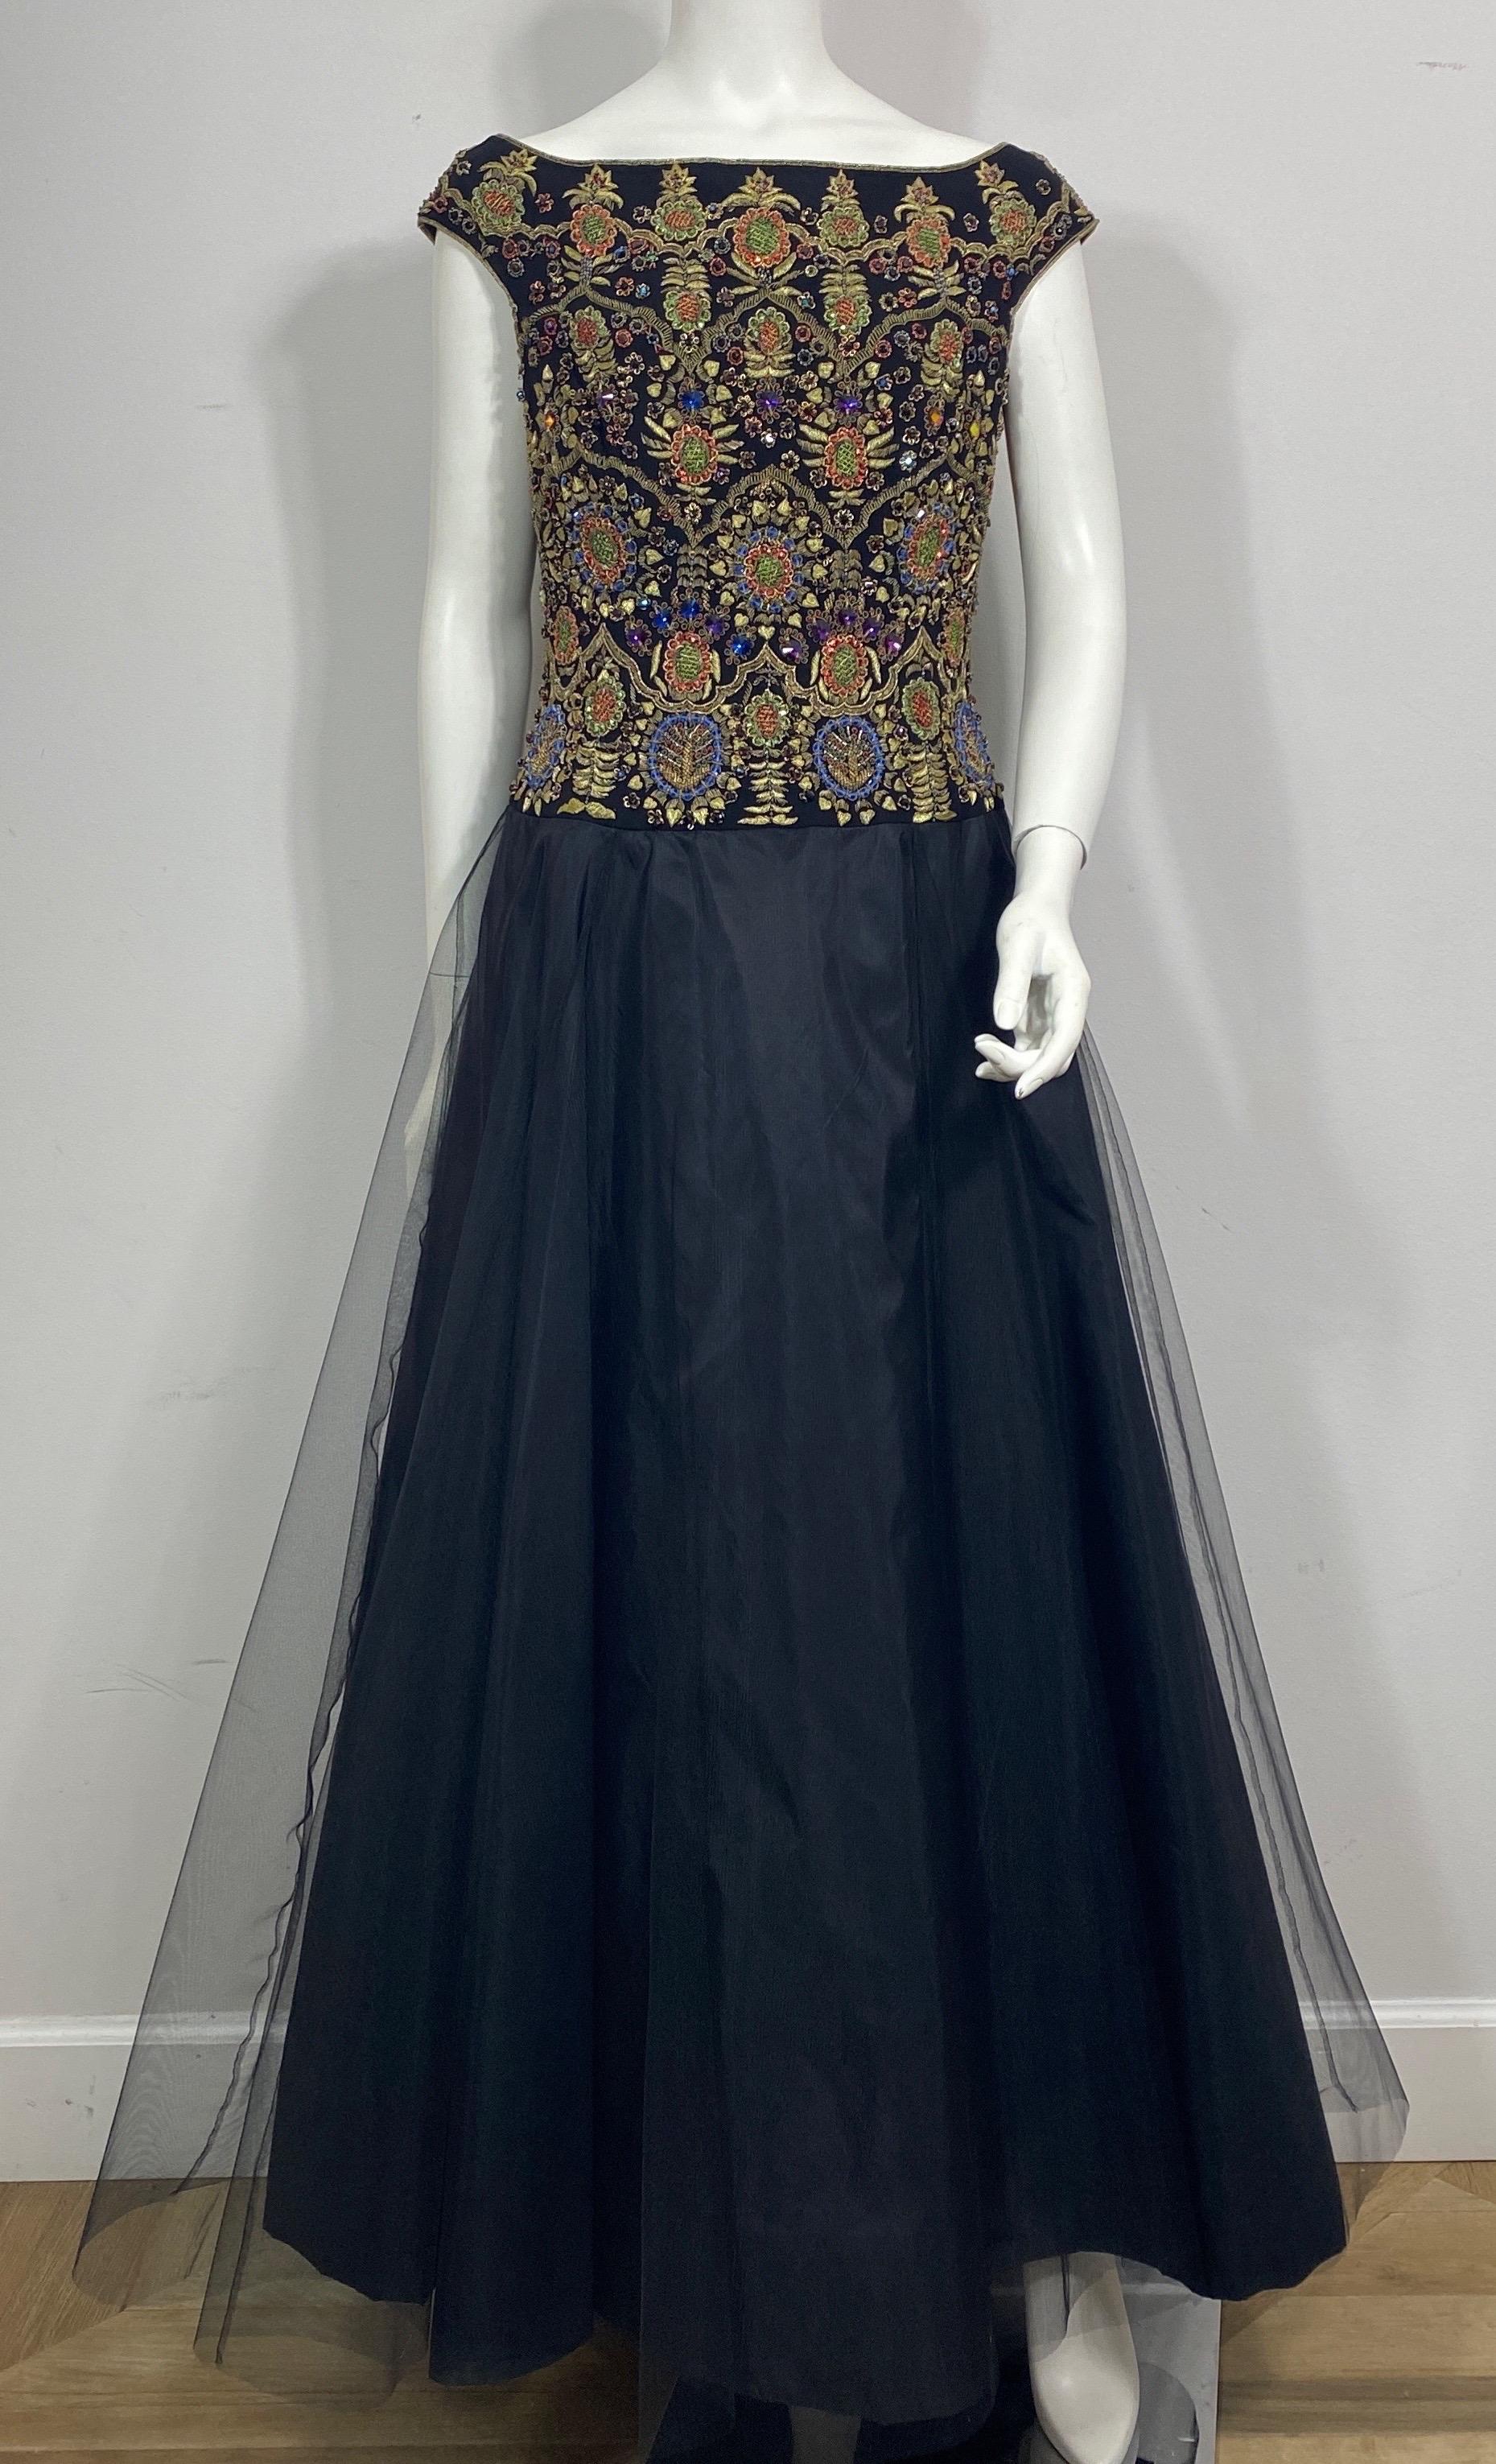 Escada Black Silk Sleeveless Gown w/ Multi Colored Beaded Bodice and a multi layer tulle skirt est une taille 38.  Cette robe des années 1990 est en excellent état.  Elle se compose d'une magnifique soie noire et d'un corsage brodé de perles